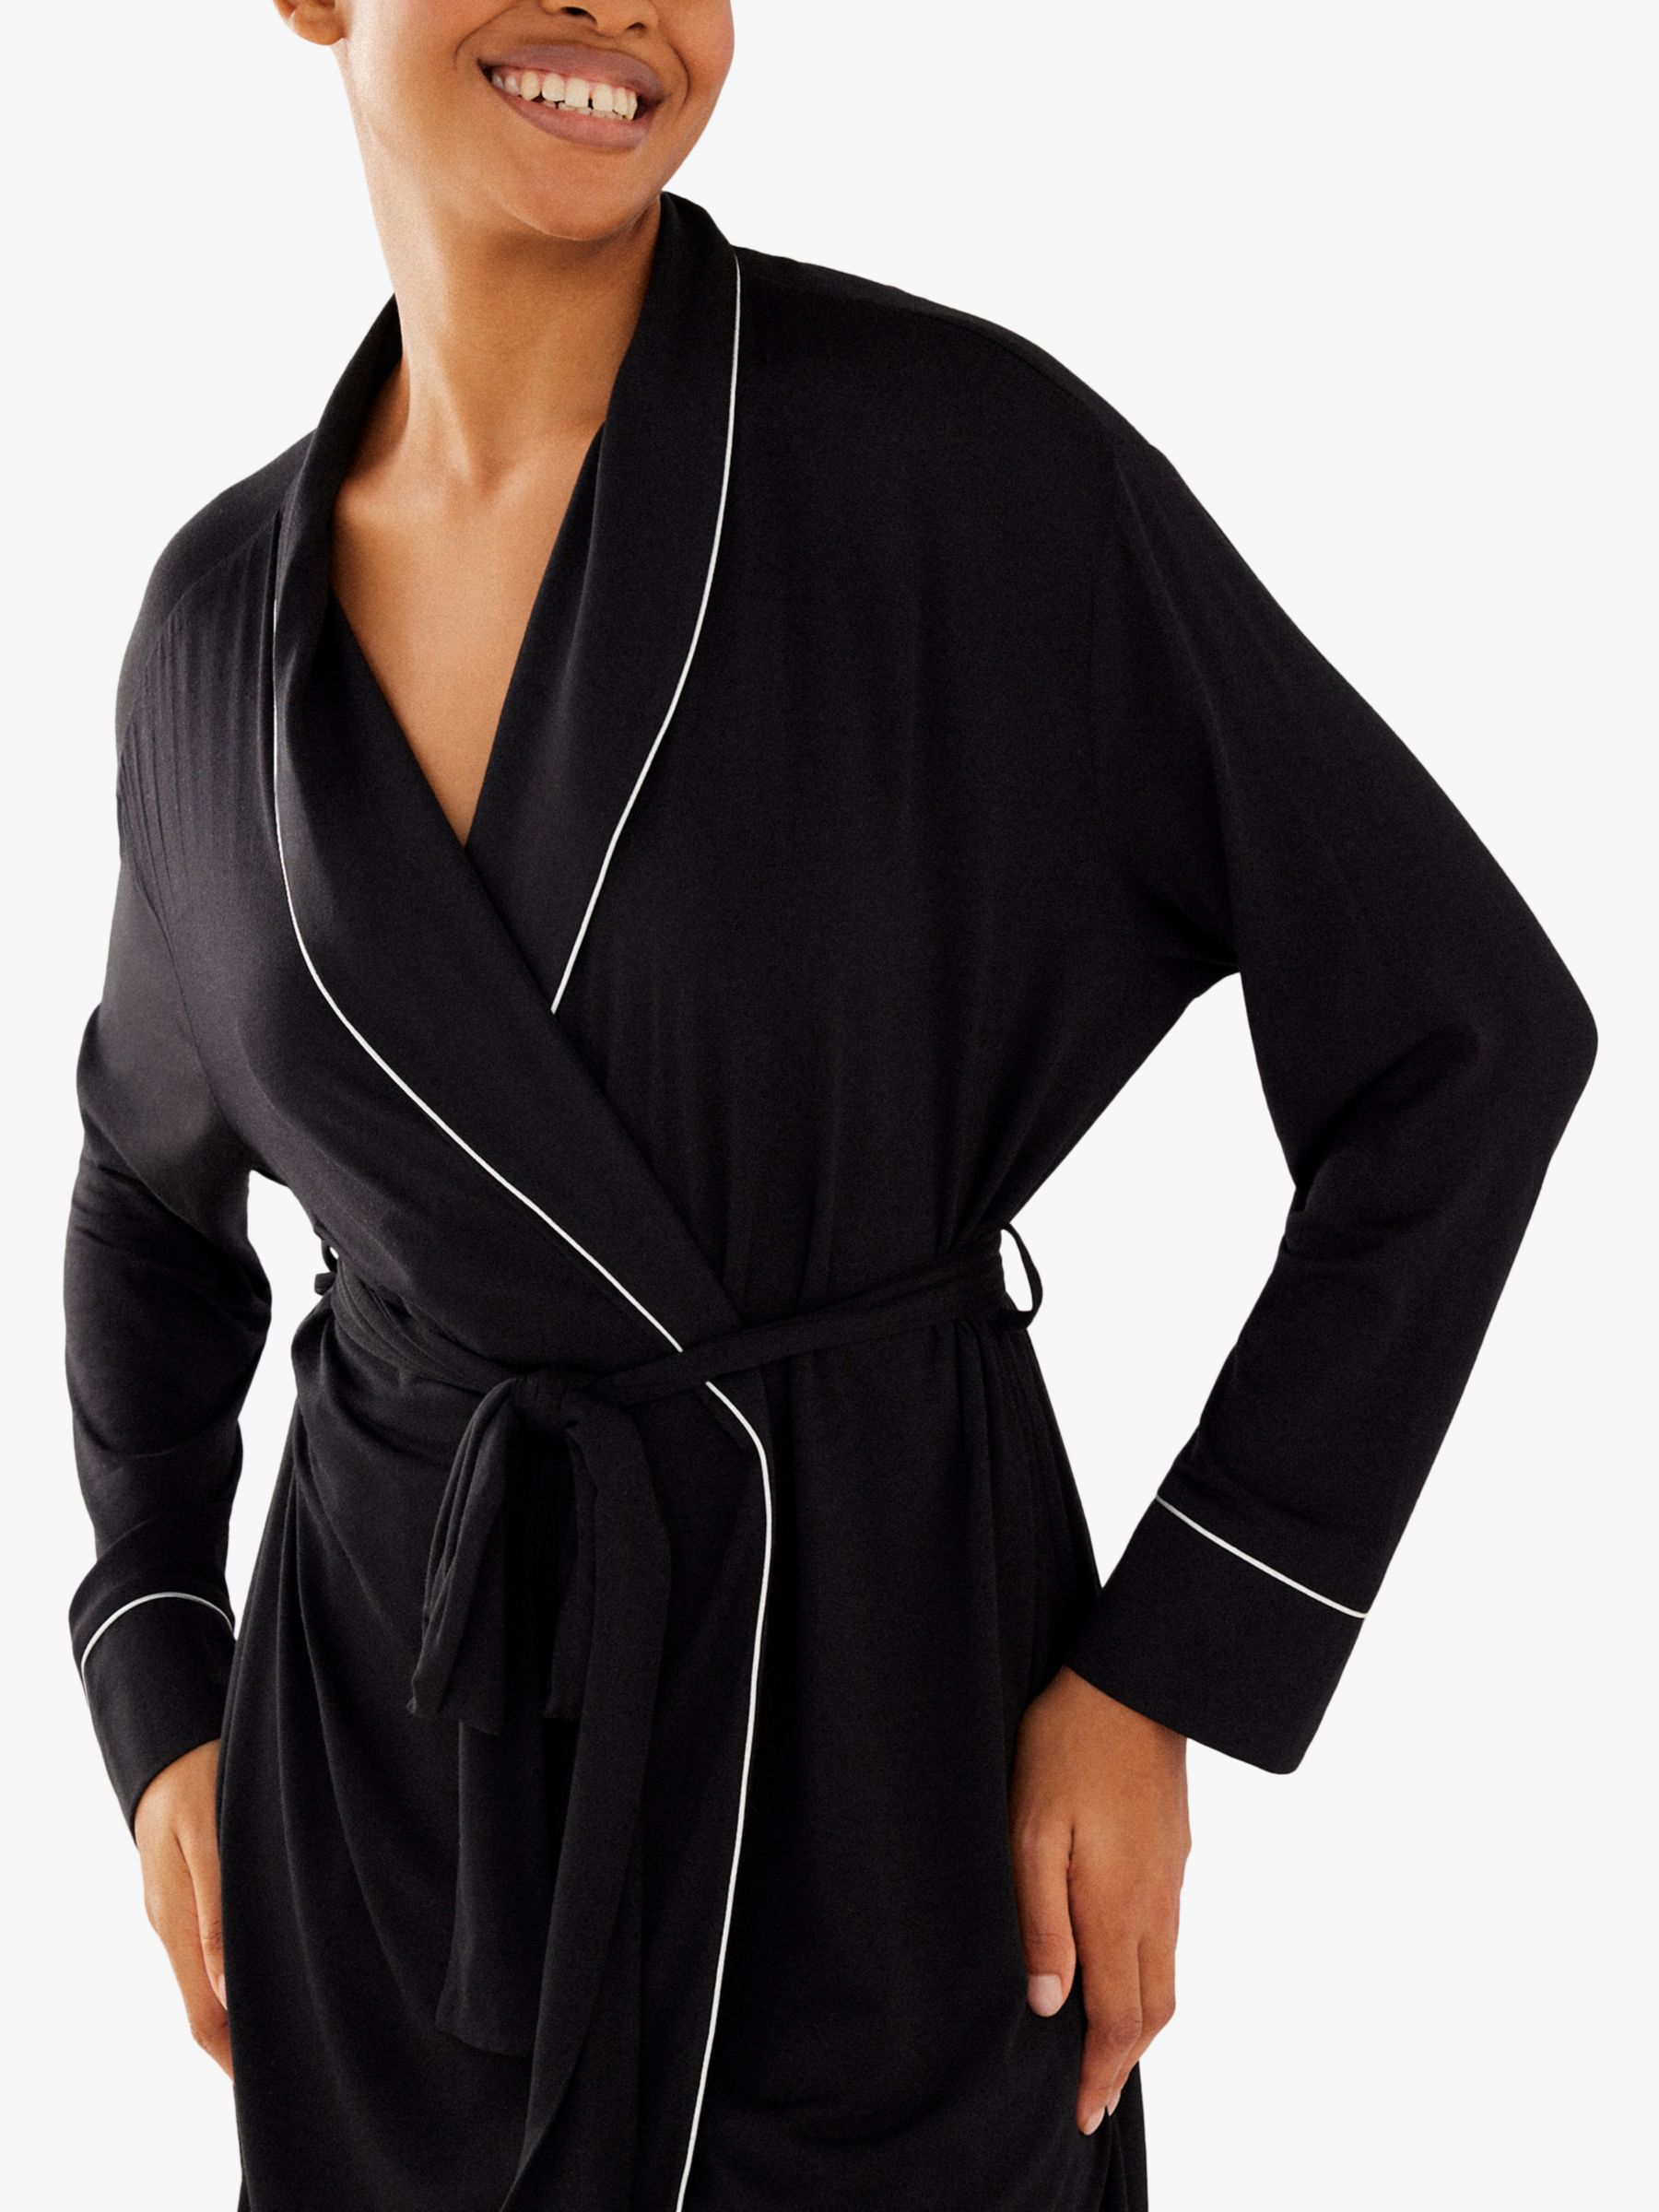 Buy Chelsea Peers Modal Dressing Gown Online at johnlewis.com